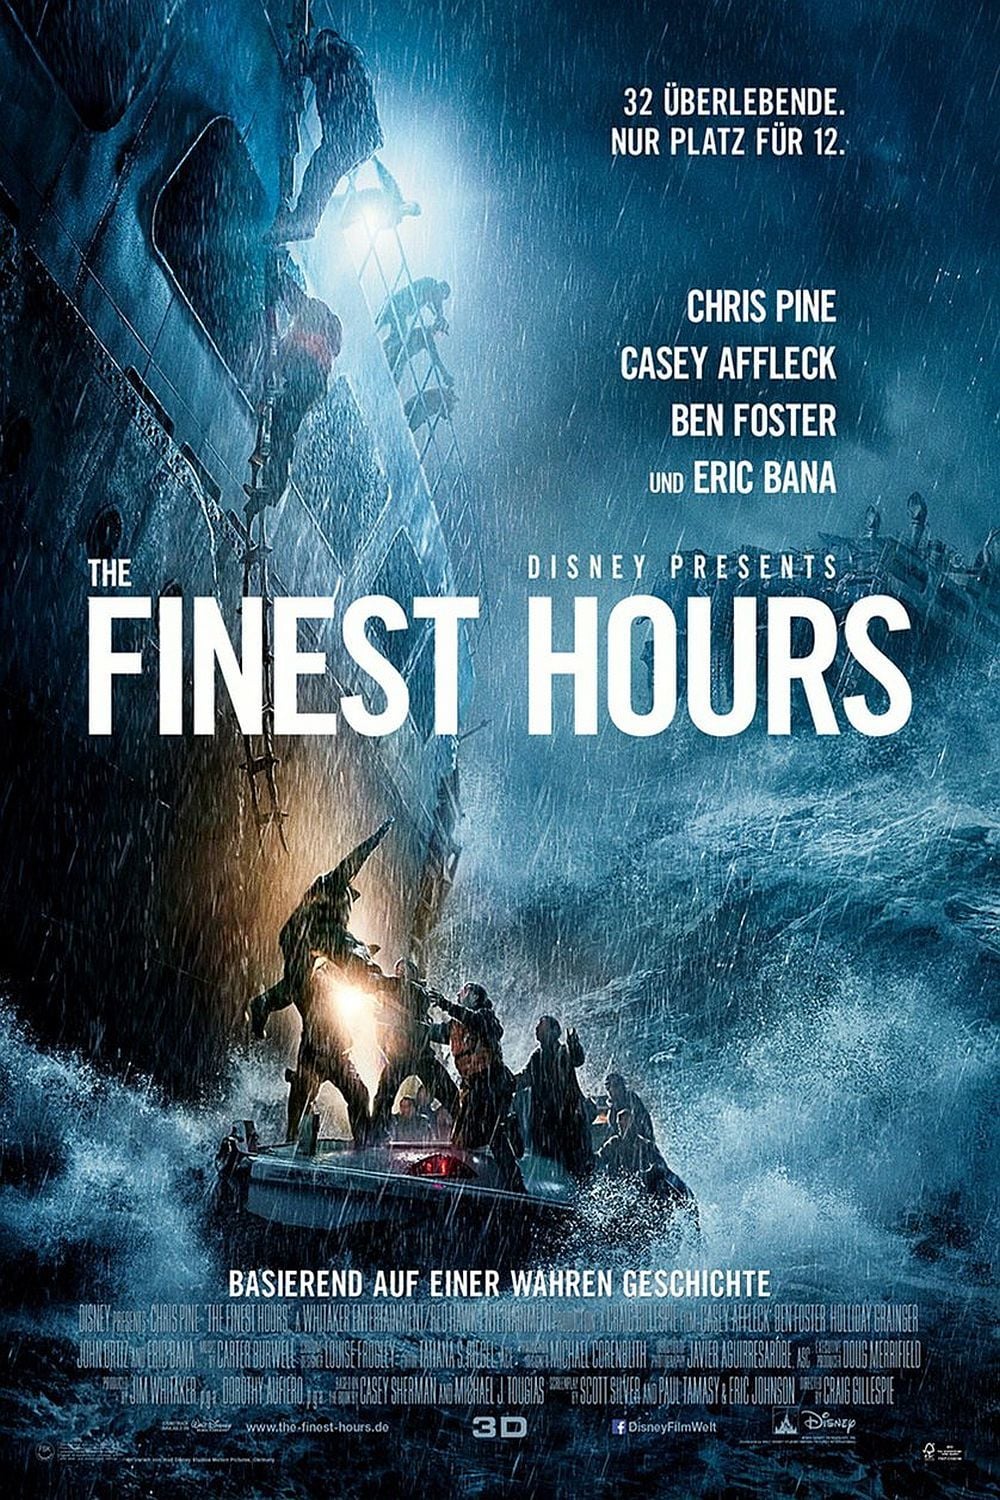 Plakat von "The Finest Hours"